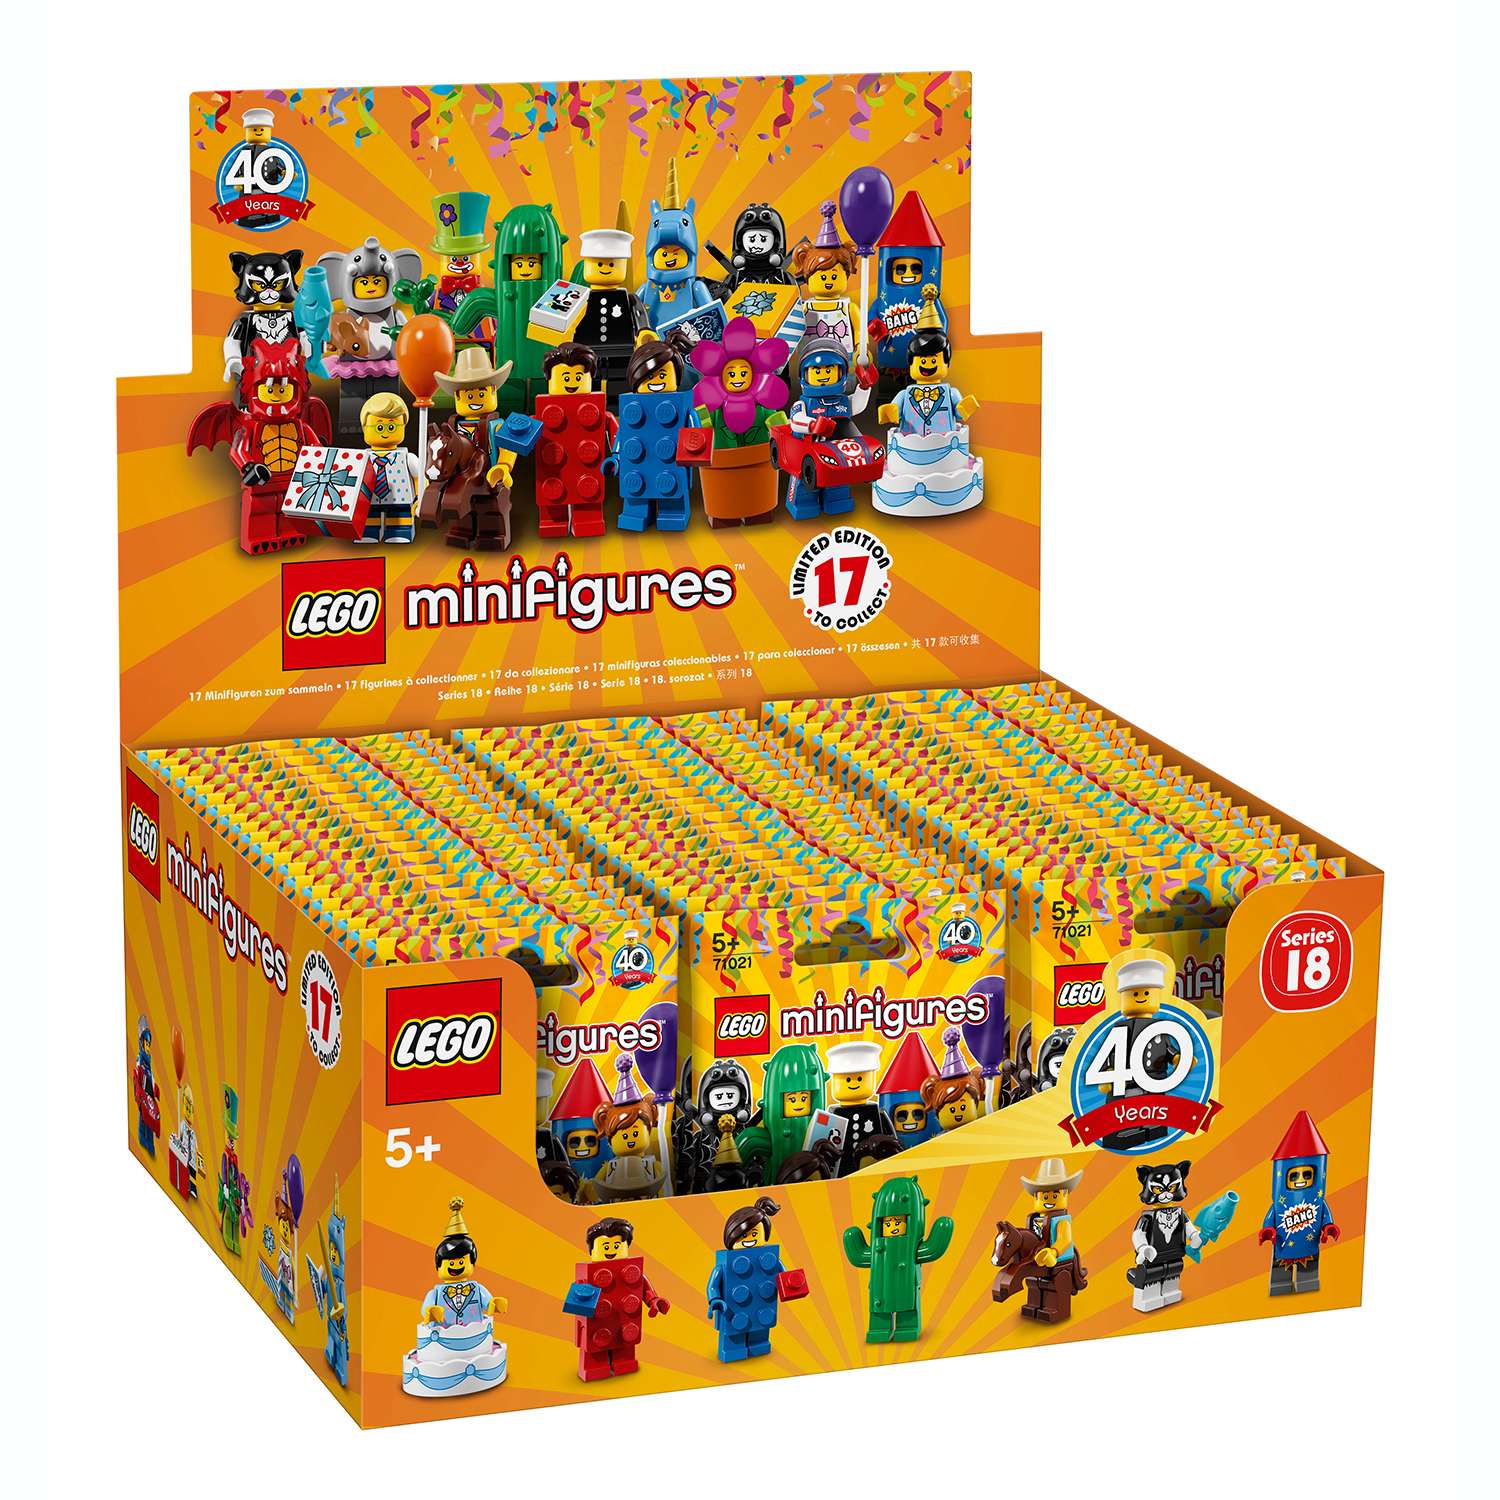 Минифигурки LEGO Юбилейная серия 71021 в непрозрачной упаковке (Сюрприз) - фото 3